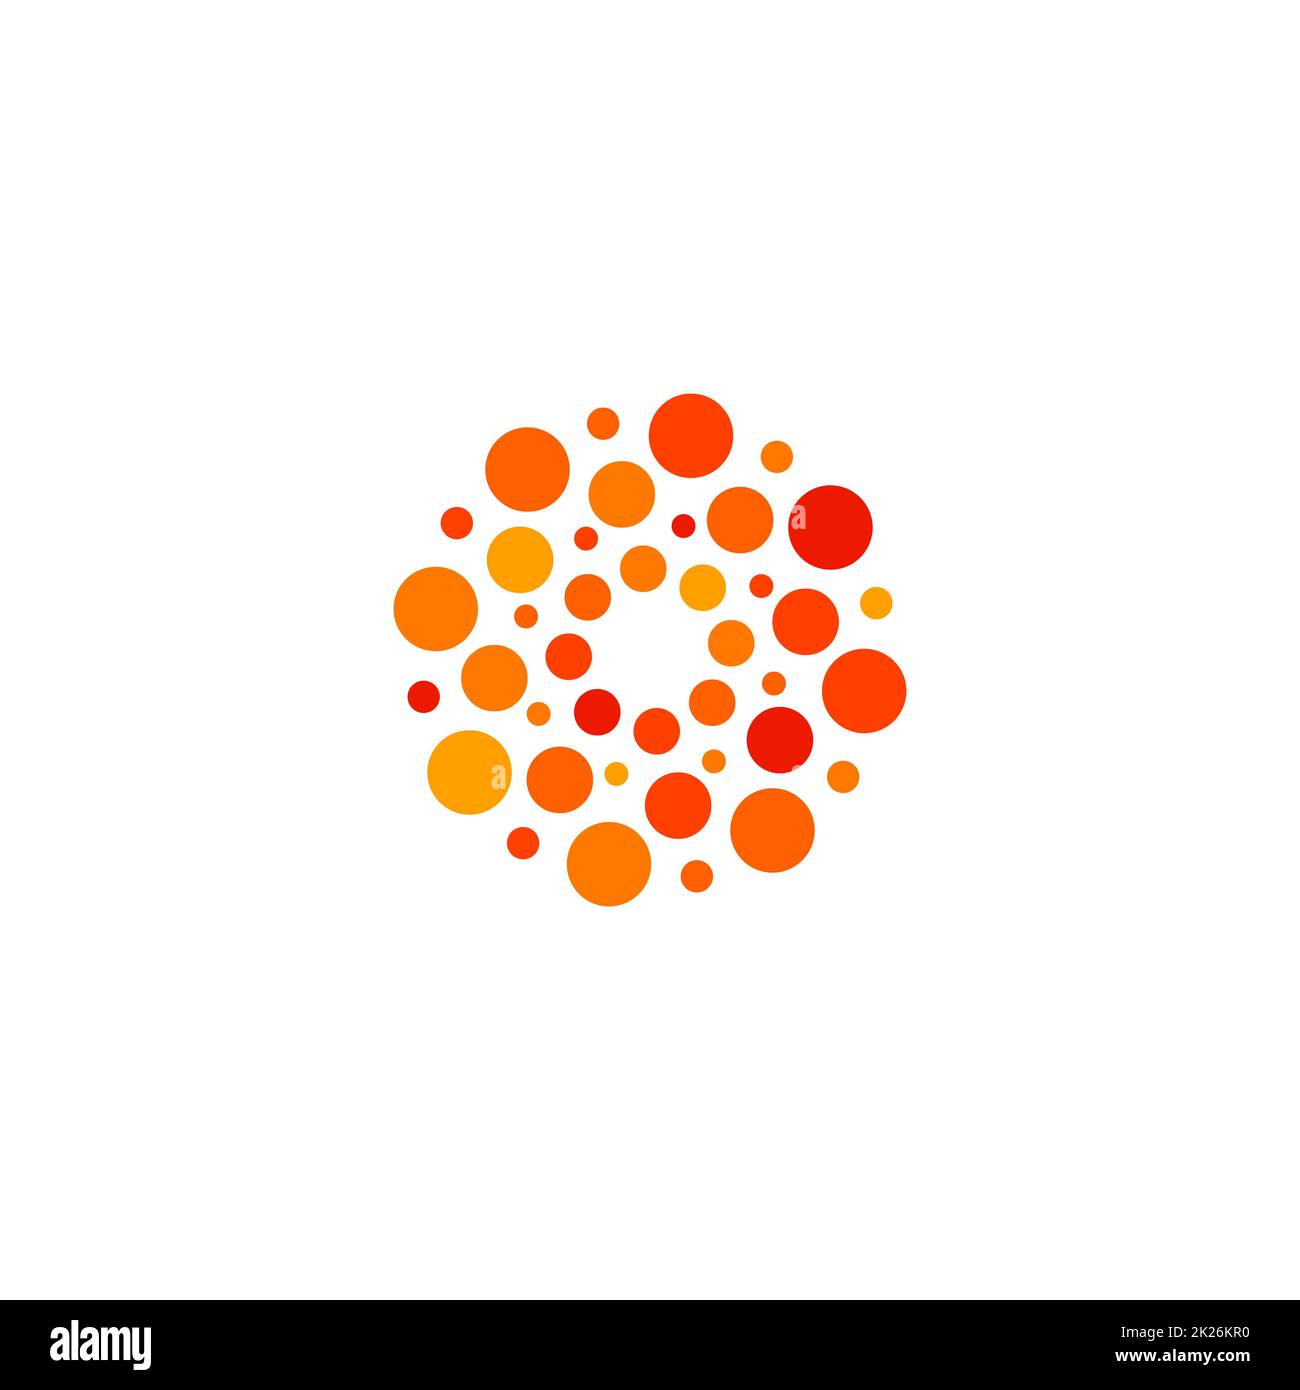 Isoliertes, abstraktes, rundes, orangefarbenes und rotes Logo, gepunktetes, stilisiertes Sonnenlogo auf weißem Hintergrund, Vektordarstellung Stockfoto